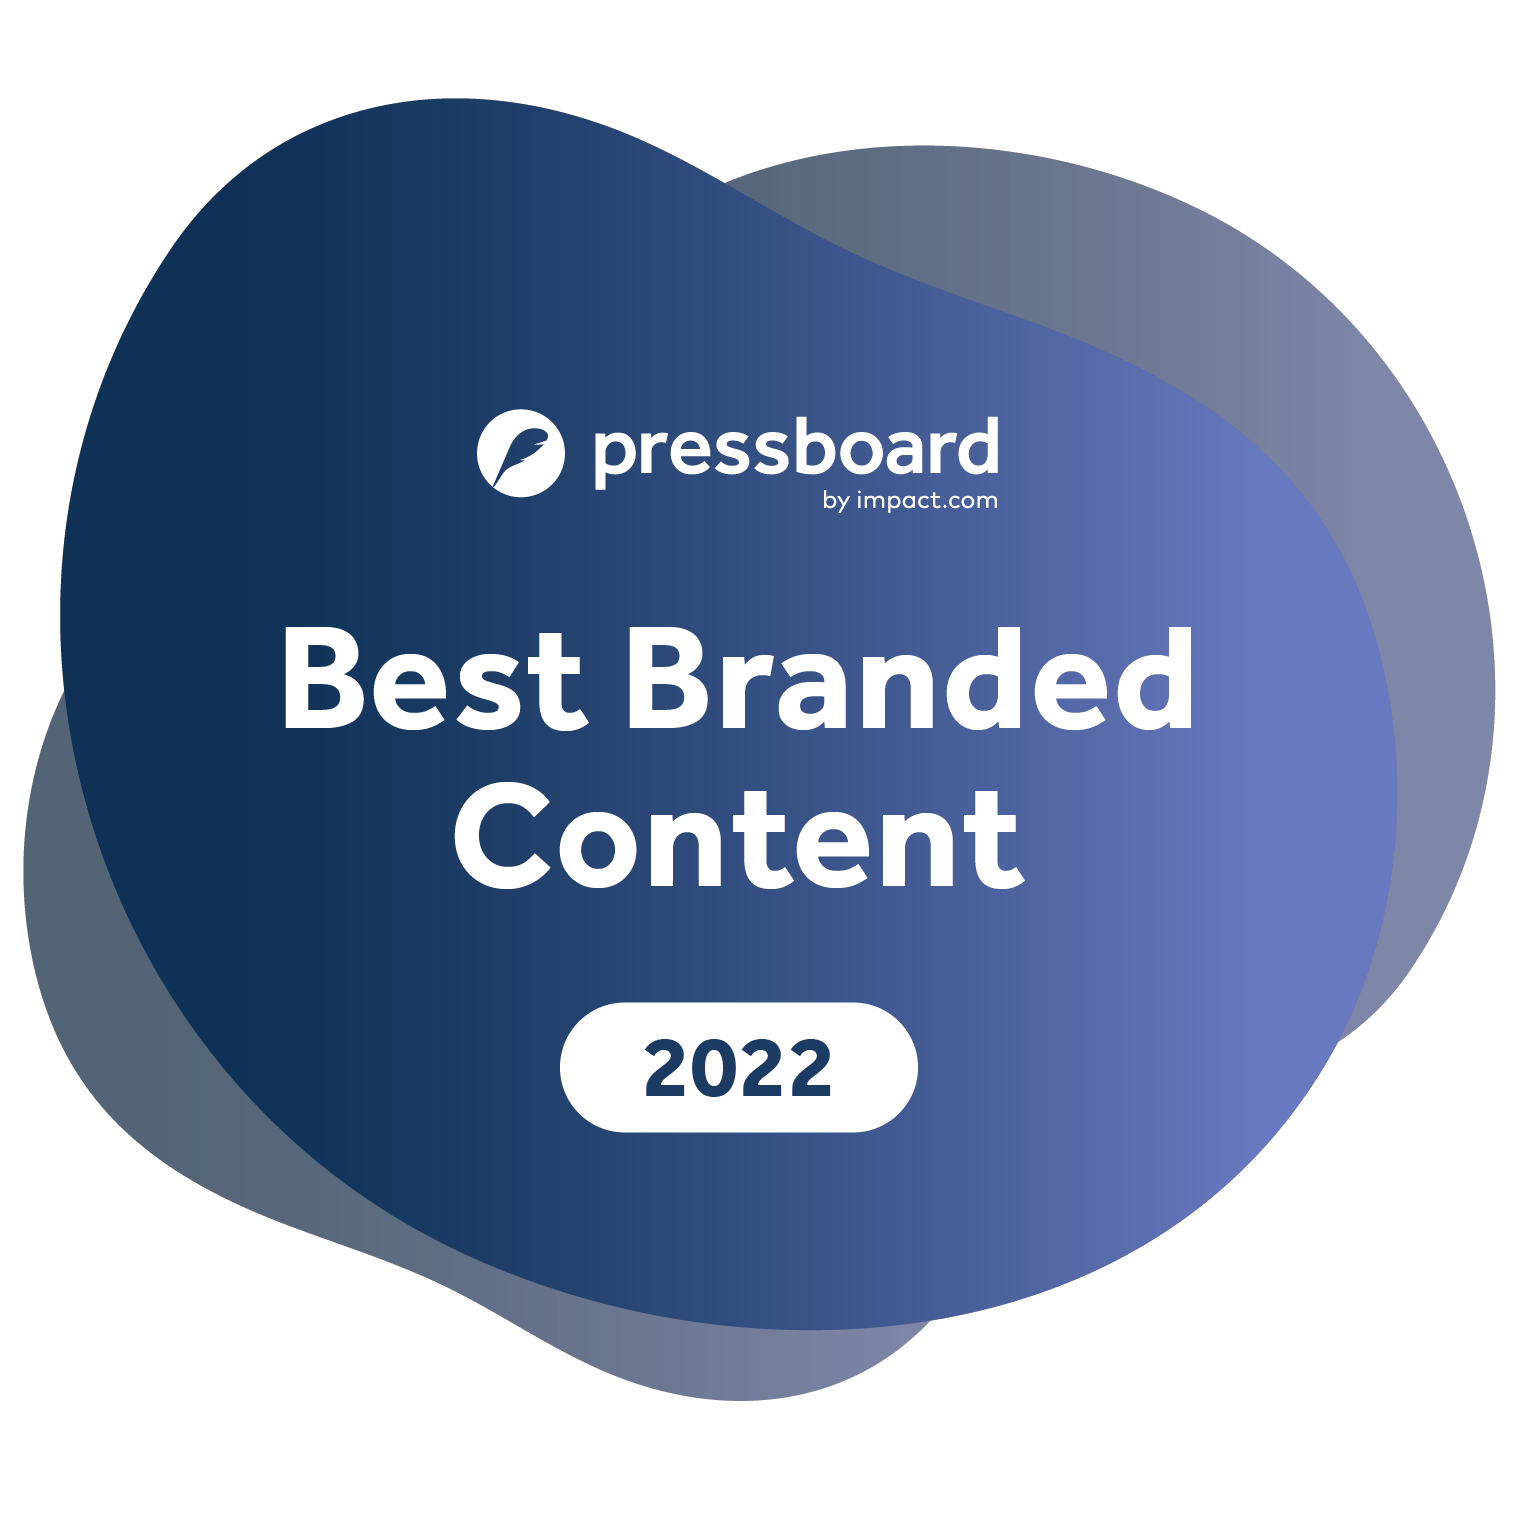 Pressboard-Branded-Content-Awards-Badge-2022